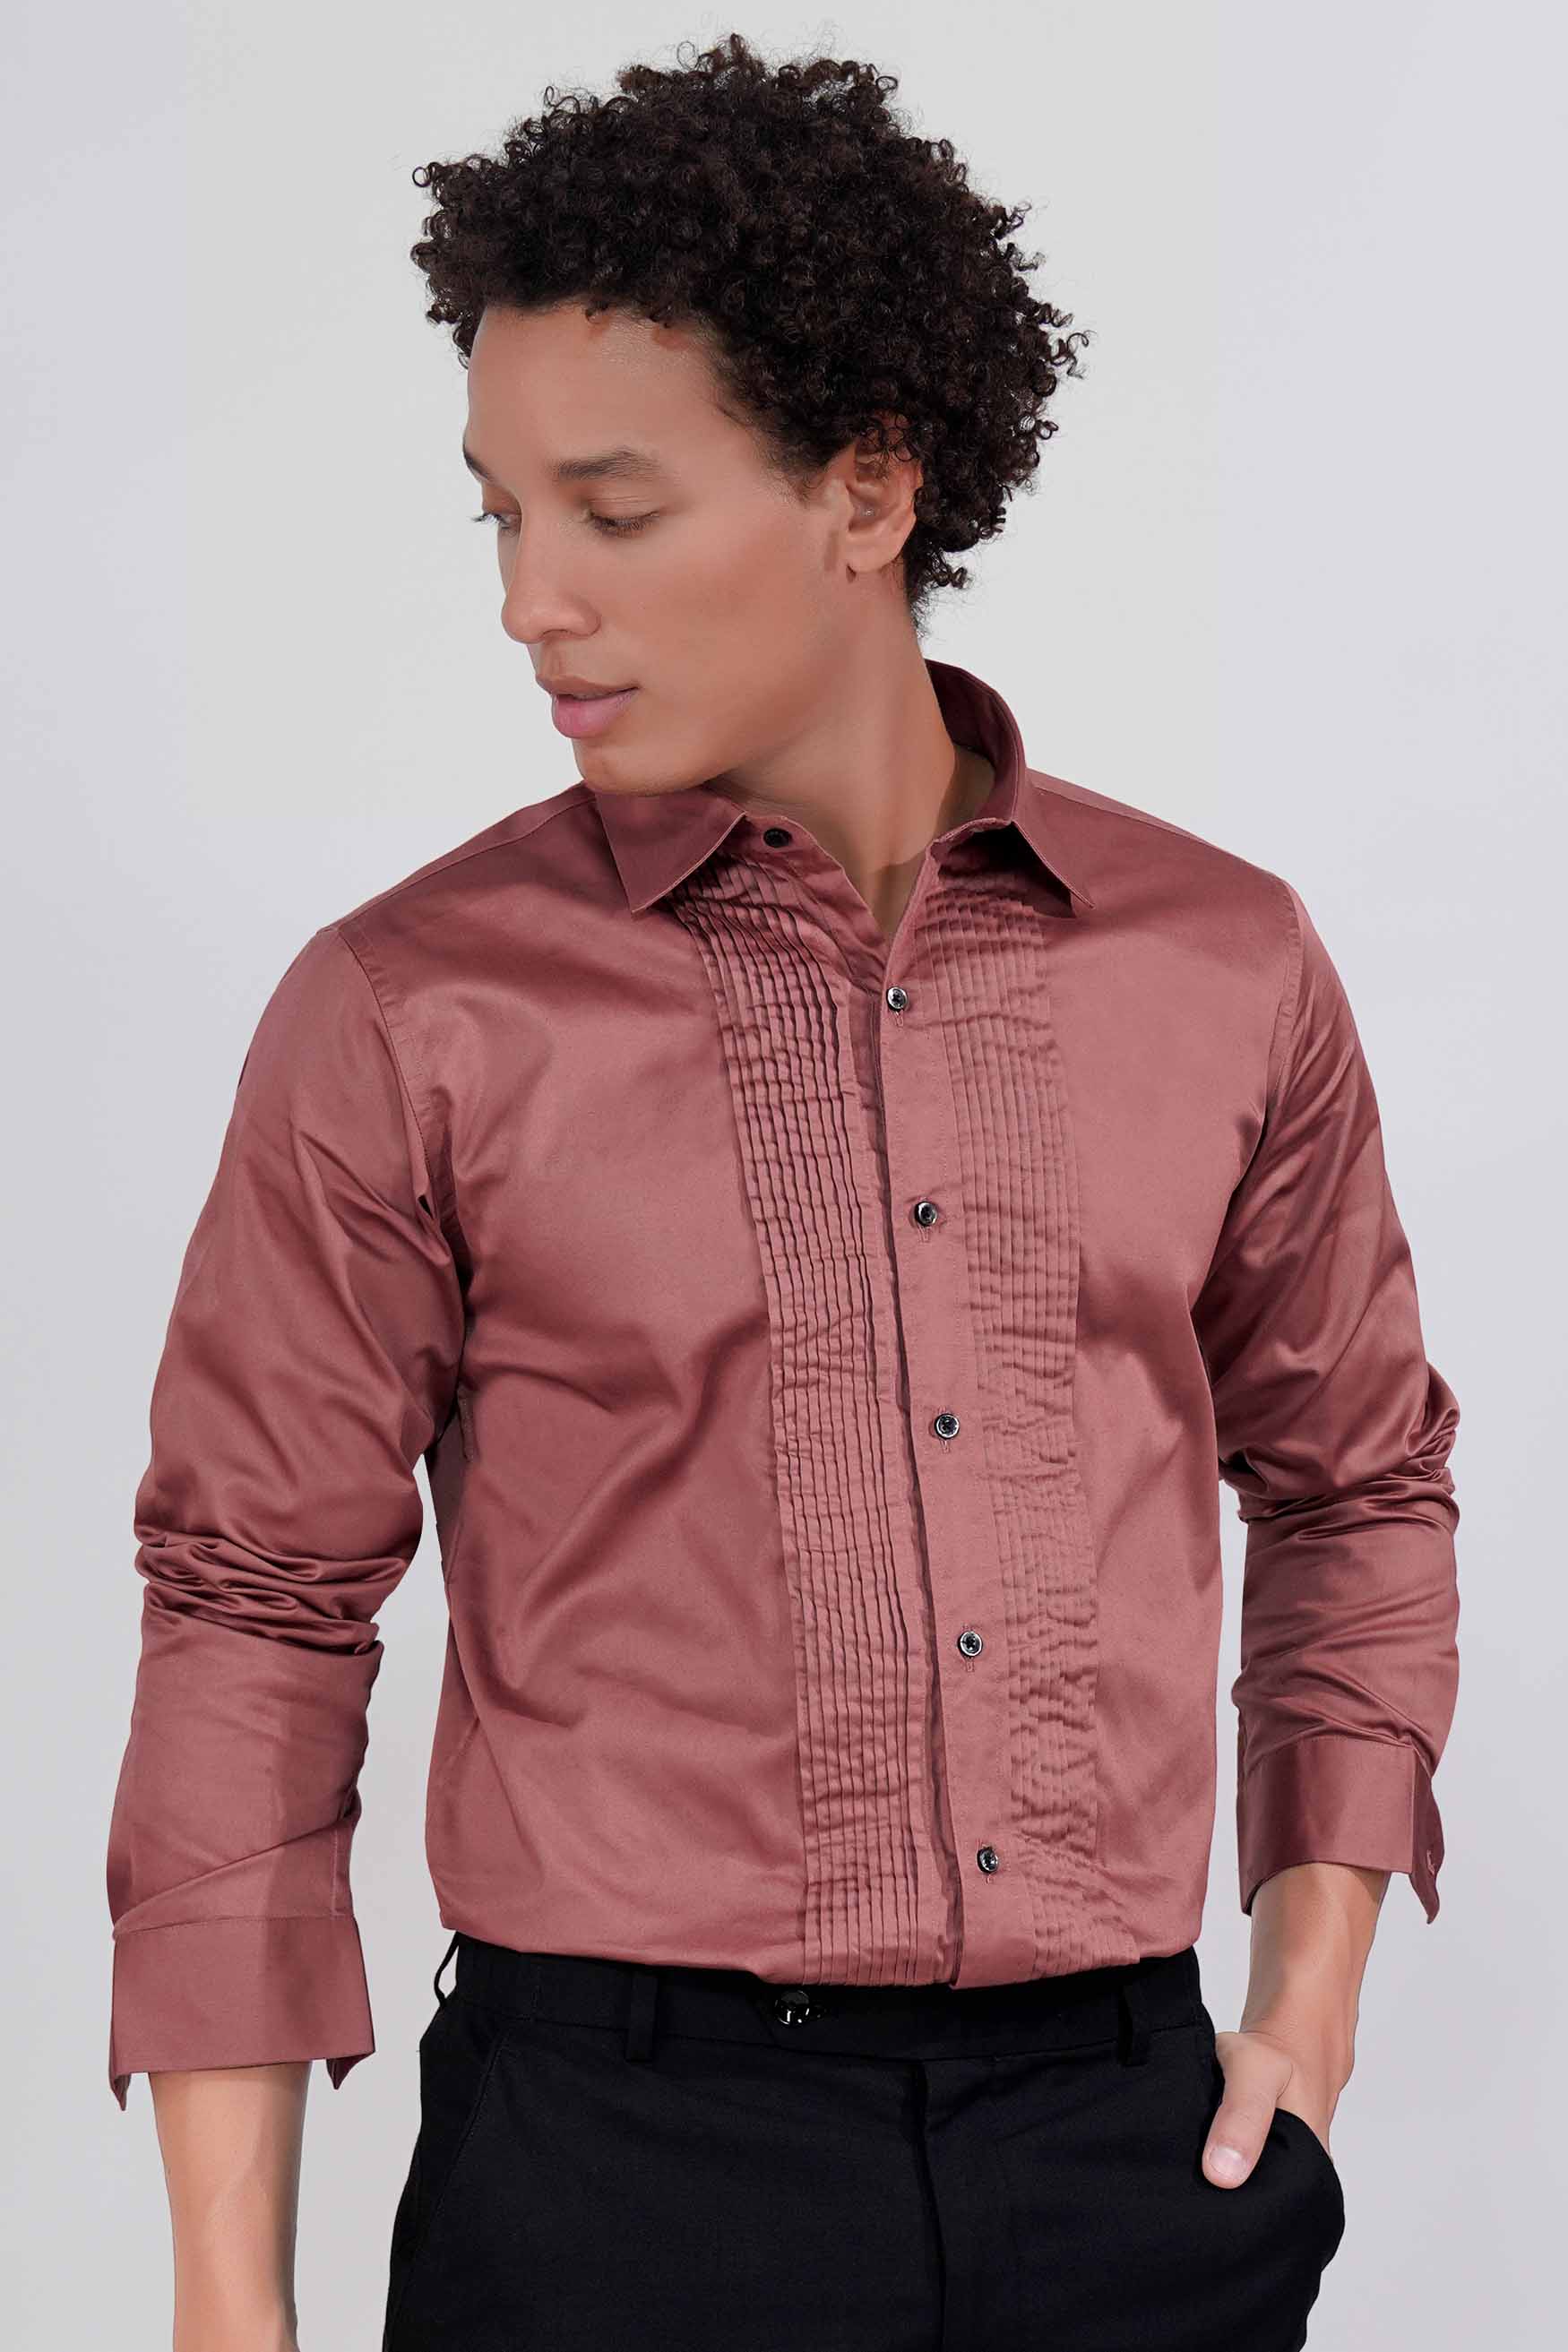 Coral Pink Subtle Sheen Super Soft Premium Cotton Tuxedo Shirt